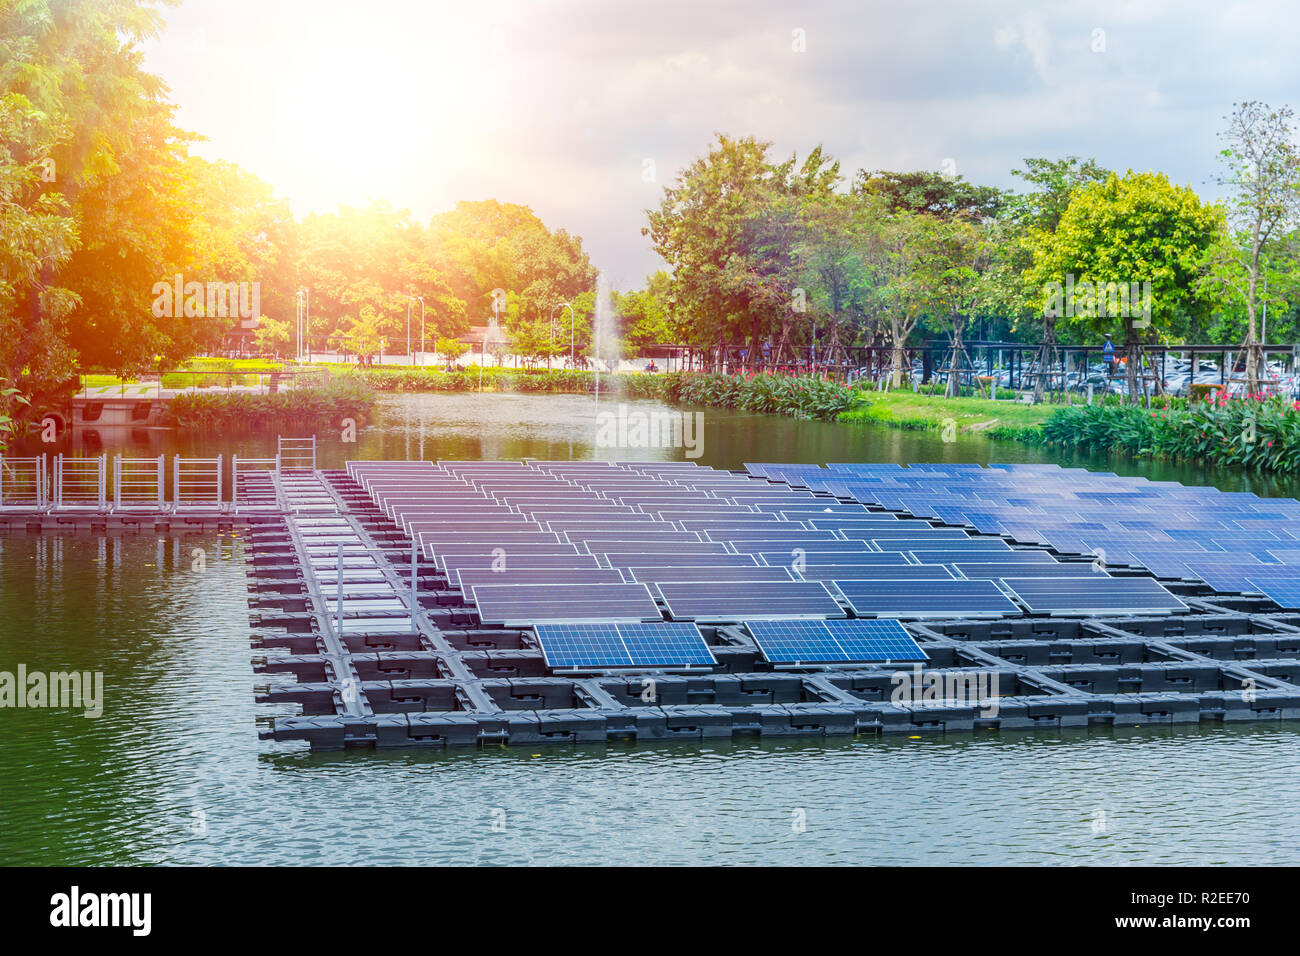 Floating Sonnenkollektoren oder Solarzellen Plattform auf dem Wasser See Teich für die Einsparung von Energie Technologie Innovation. Stockfoto